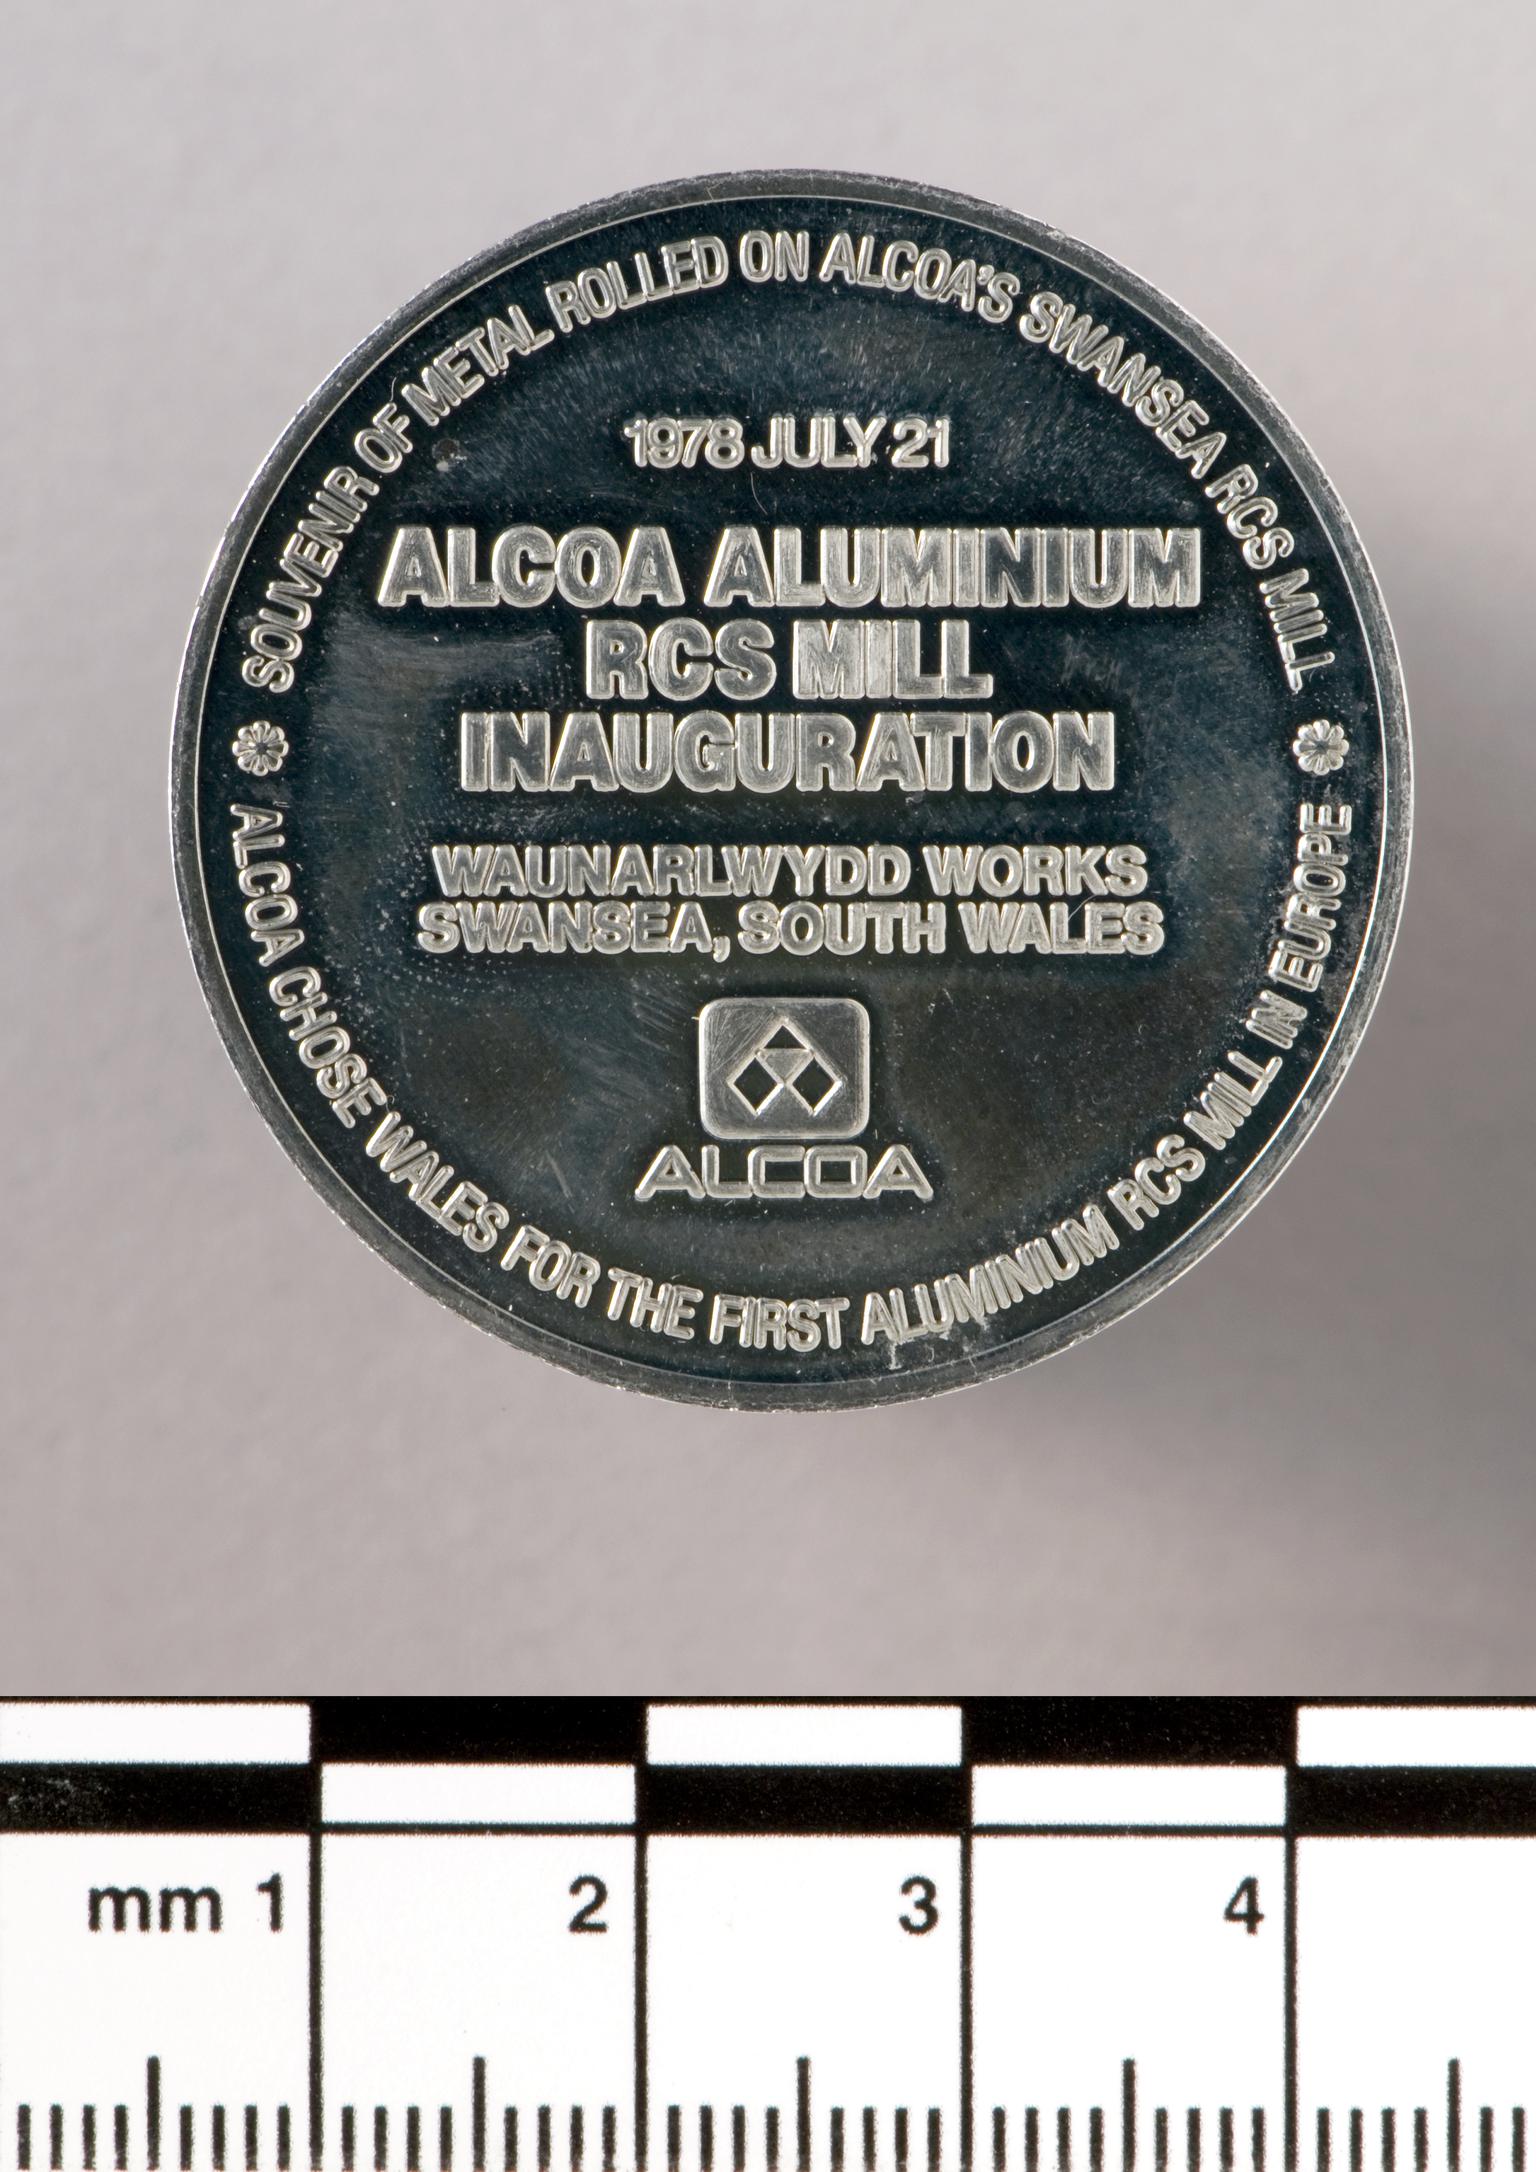 Alcoa Aluminium RCS Mill Inauguration, medal